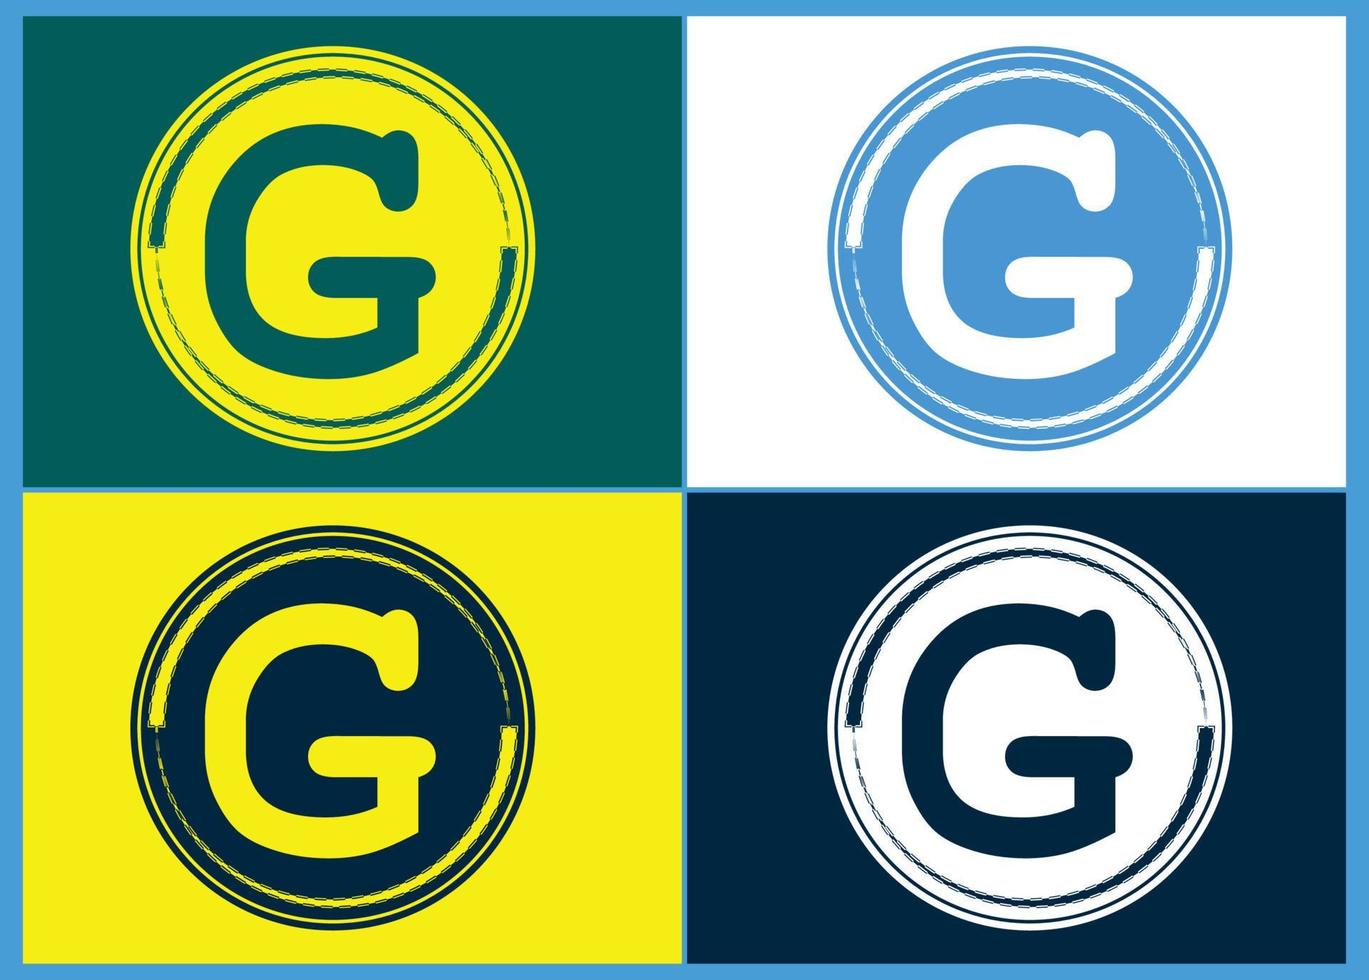 g-Brief-Logo und Symbol-Design-Vorlage vektor